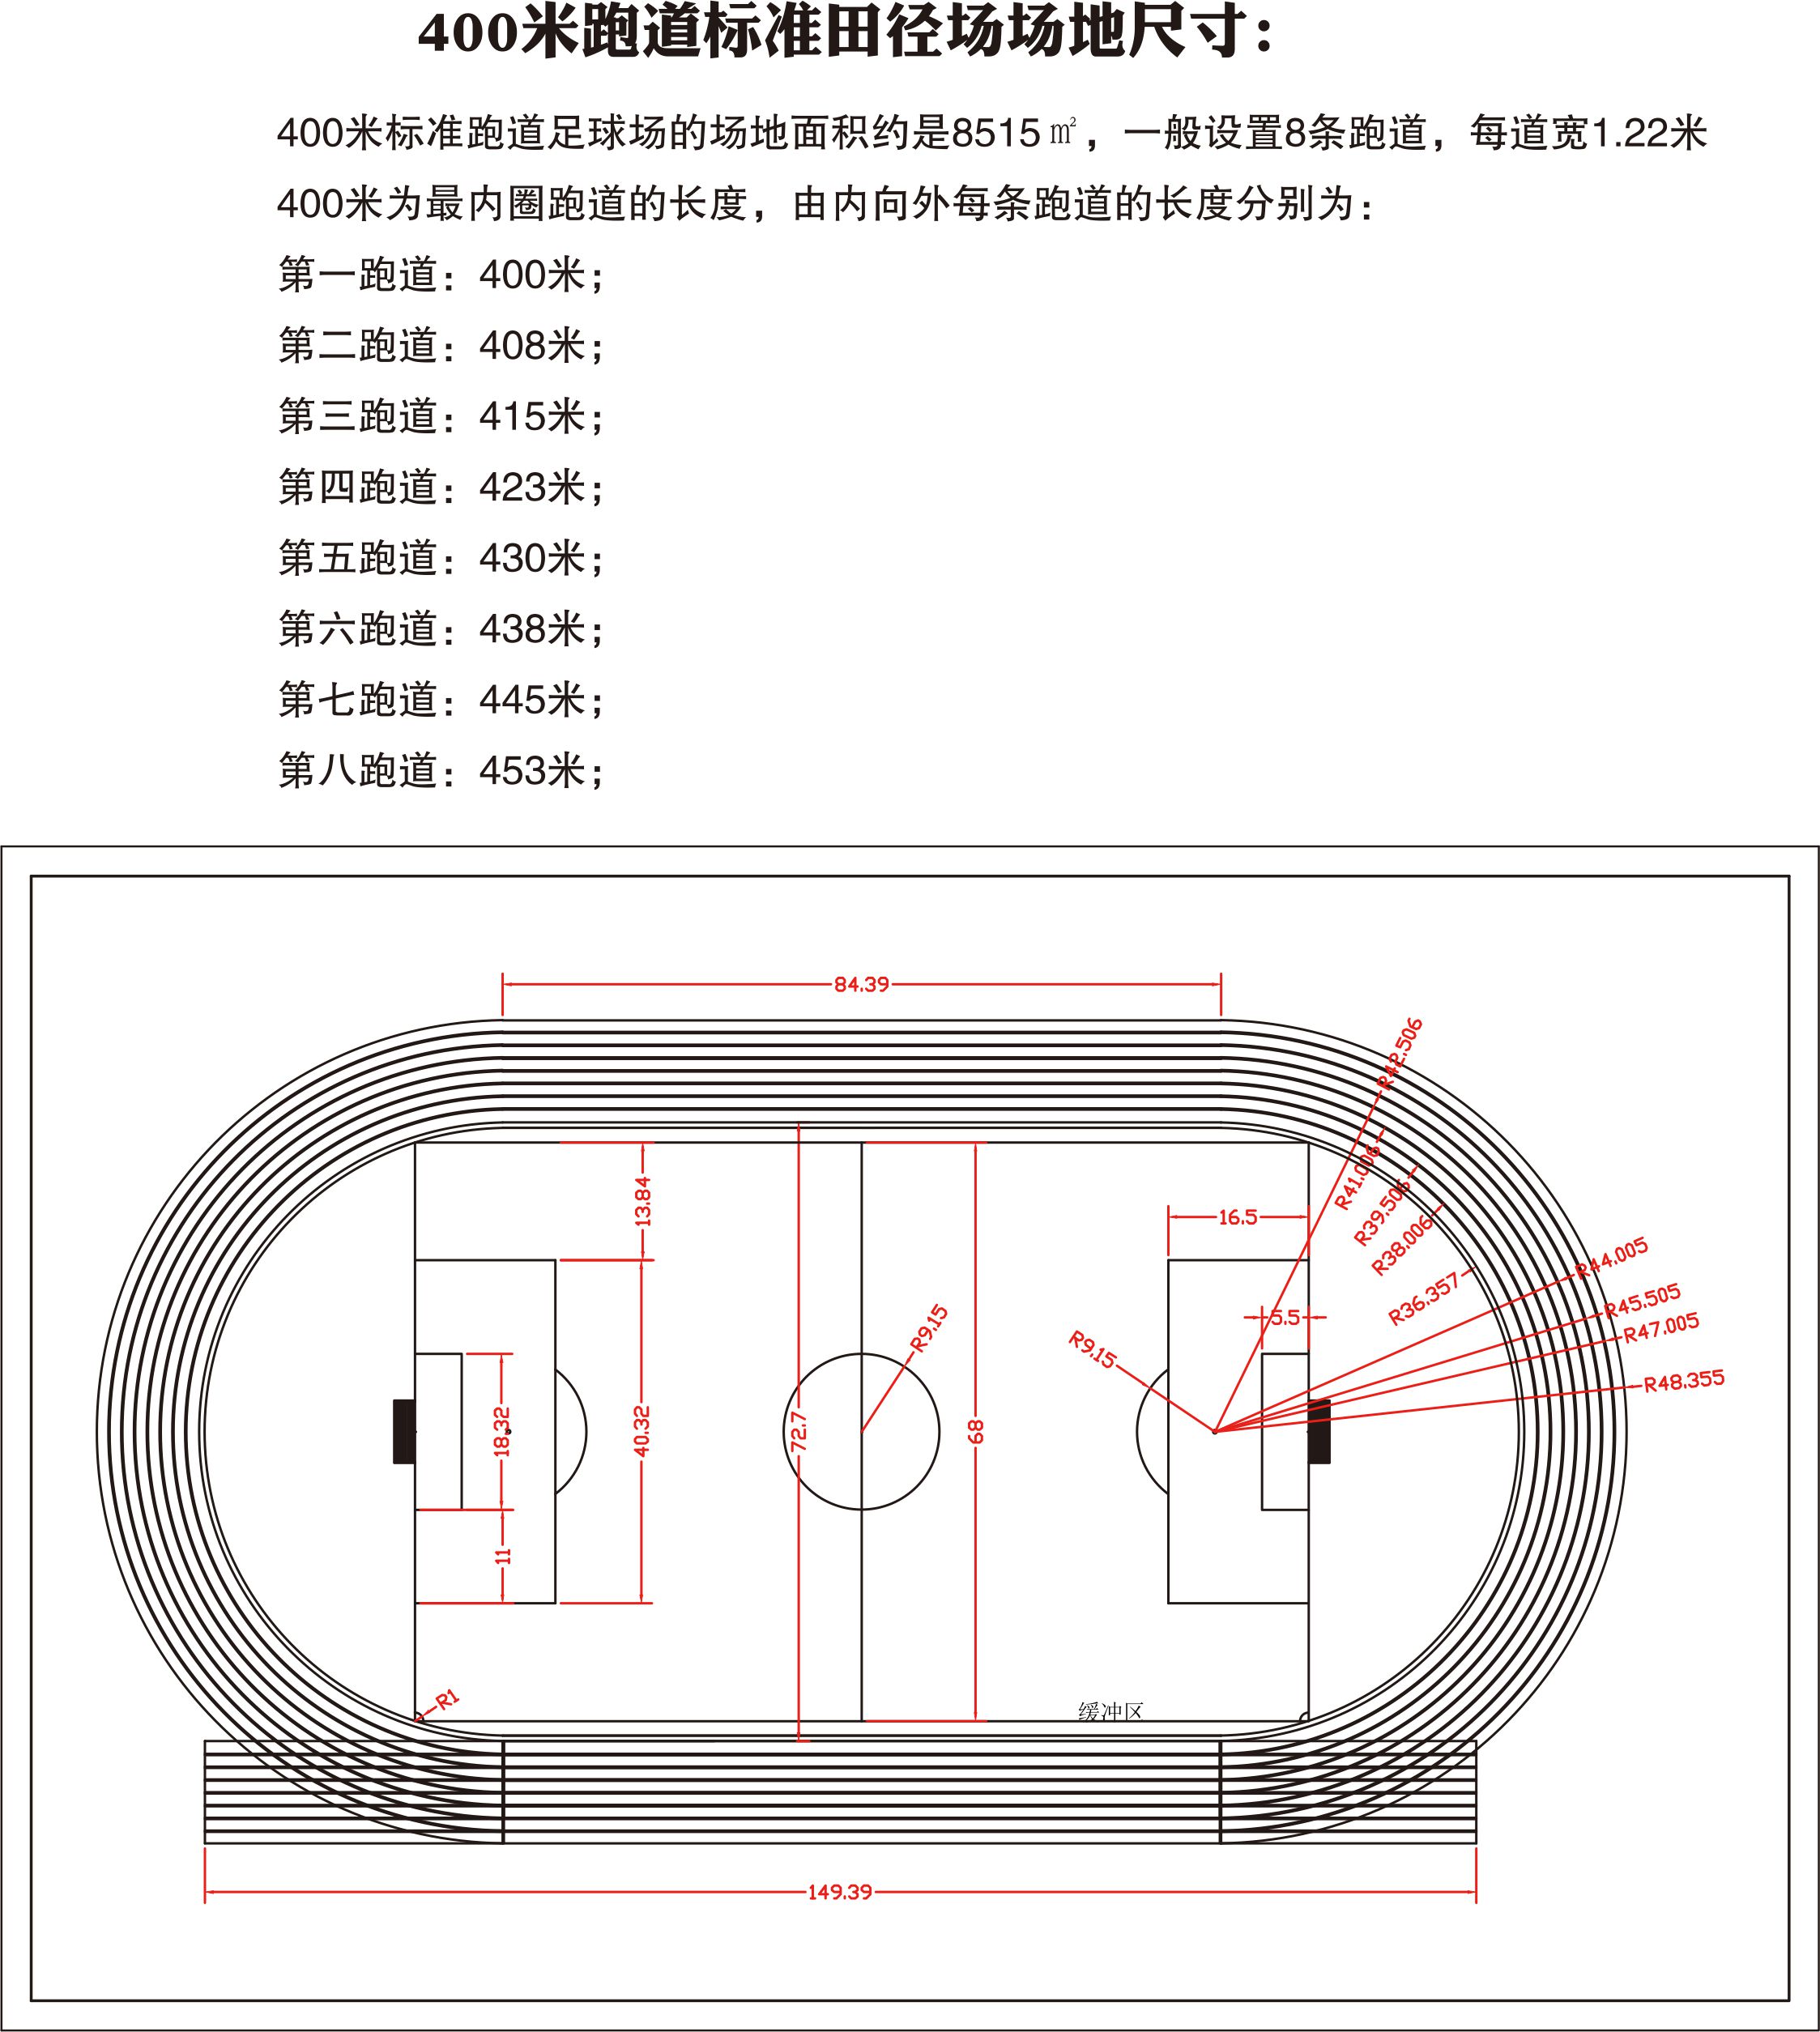 环形塑胶跑道标准尺寸400米标准跑道尺寸300米标准跑道尺寸200米标准